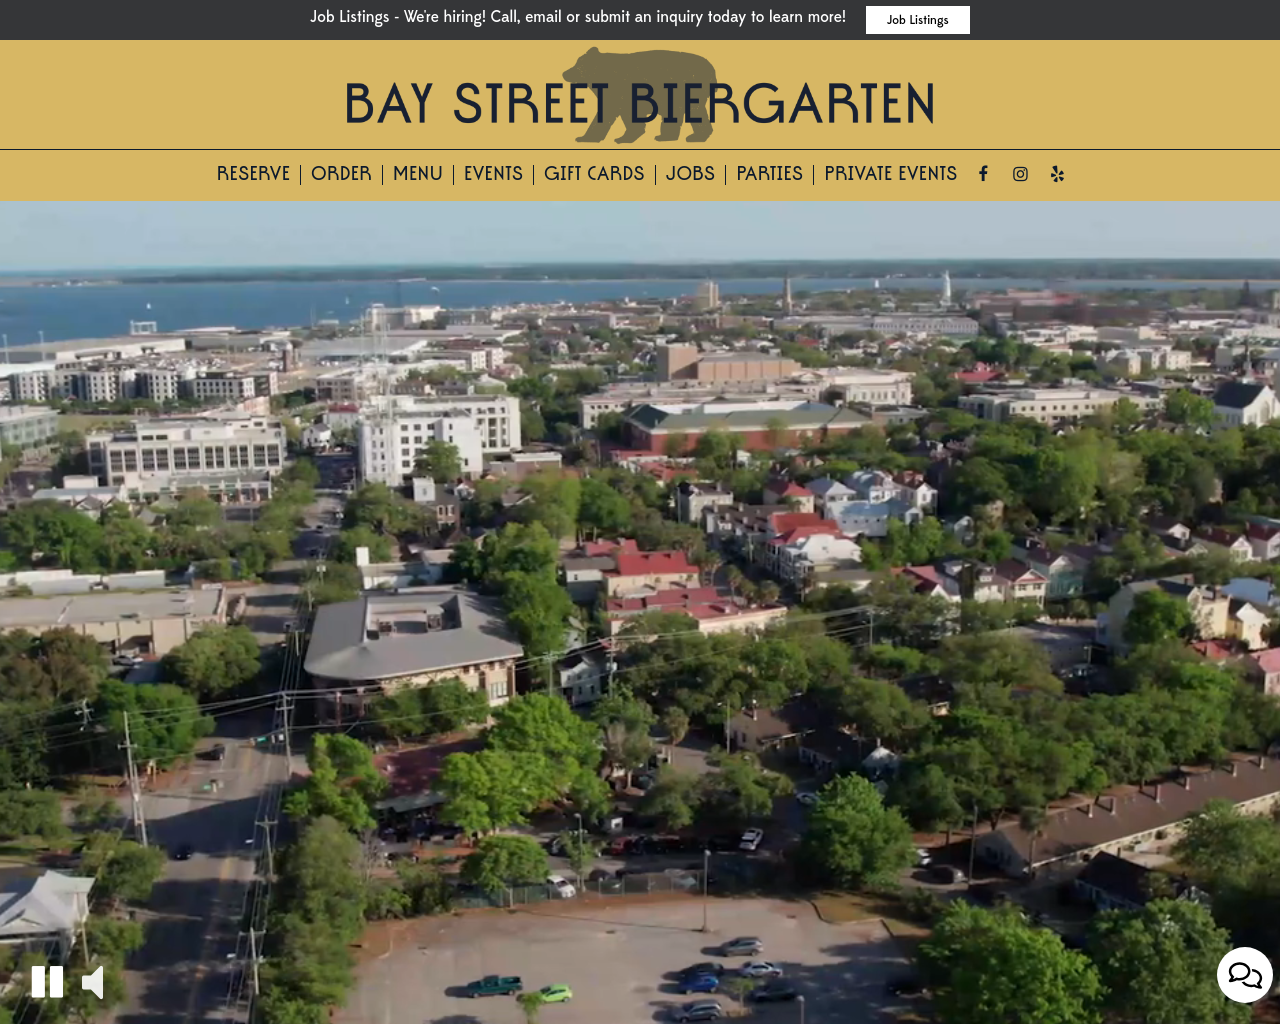 baystreetbiergarten.com